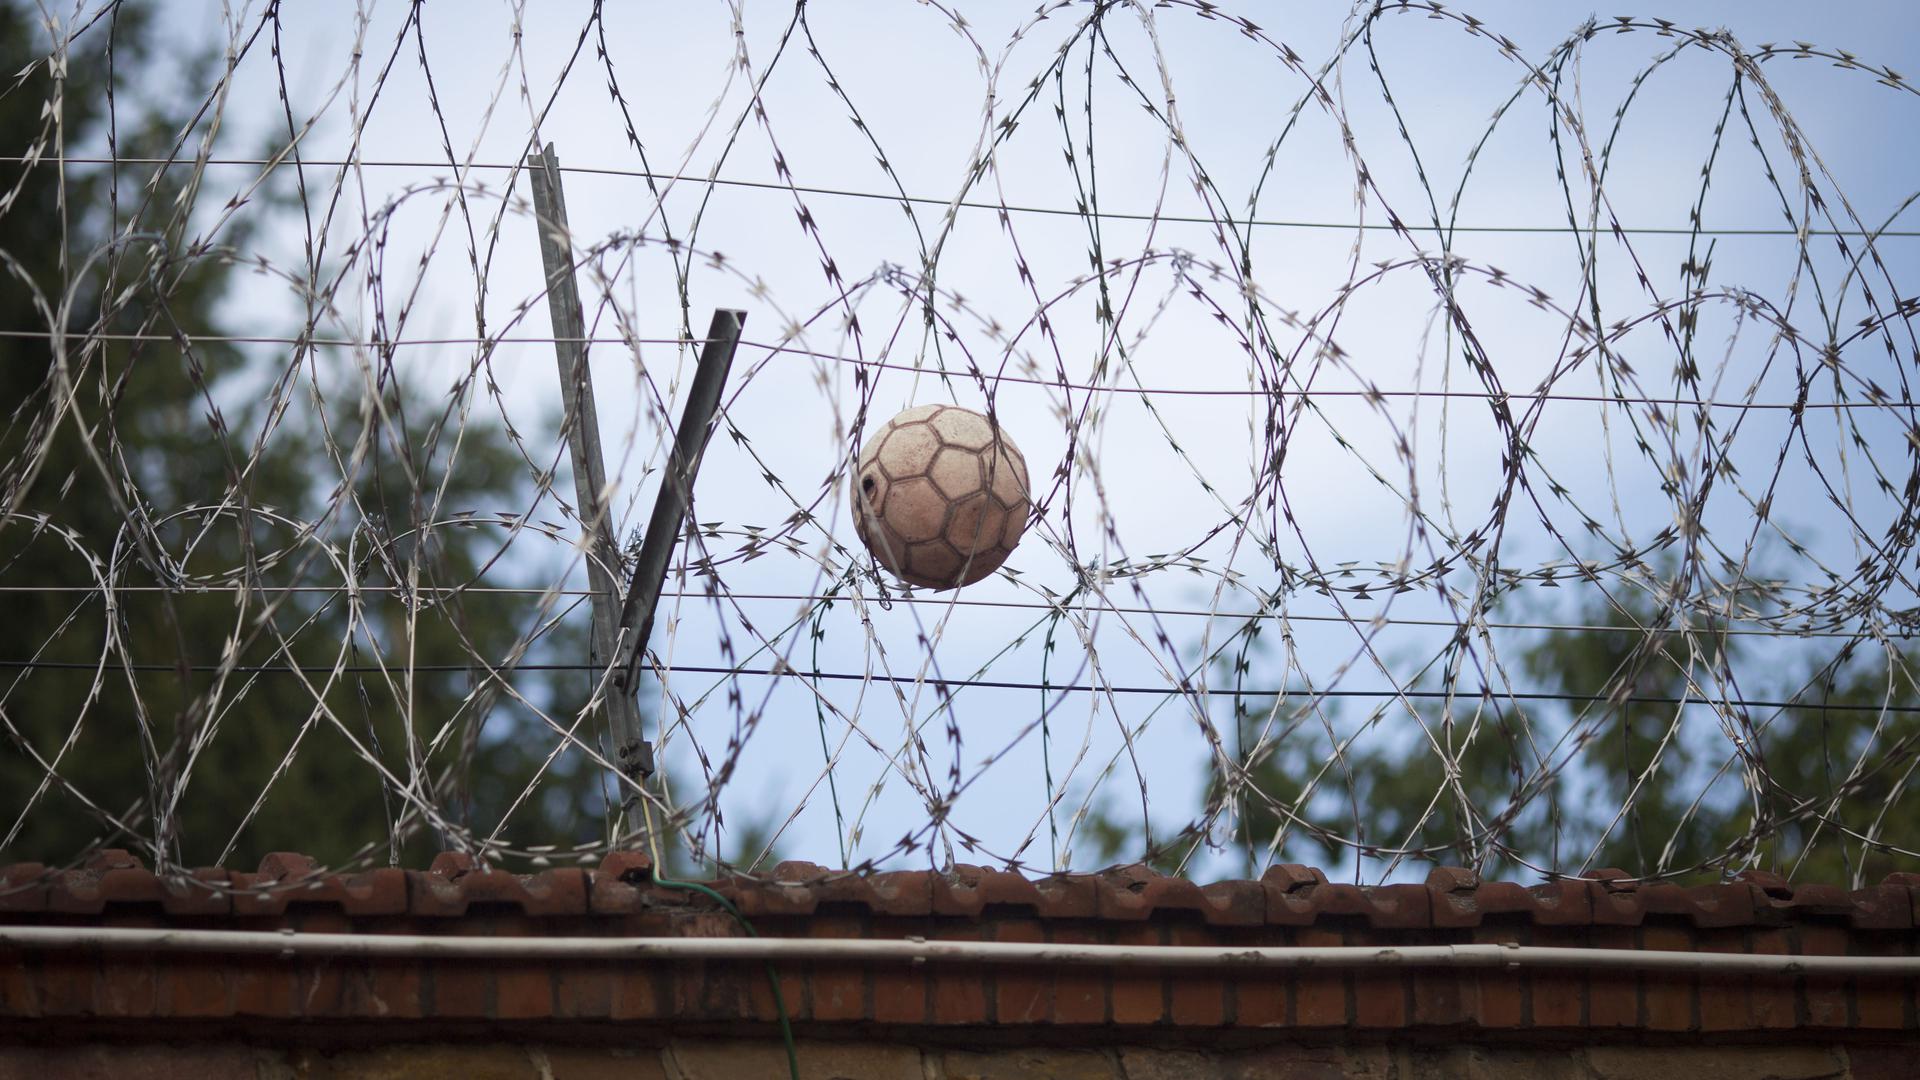 Ein Fußball hängt in der Justizvollzugsanstalt (JVA) im hessischen Butzbach im Stacheldraht auf der Gefängnismauer fest (Aufnahme vom 02.08.2012).  ++ +++ dpa-Bildfunk +++